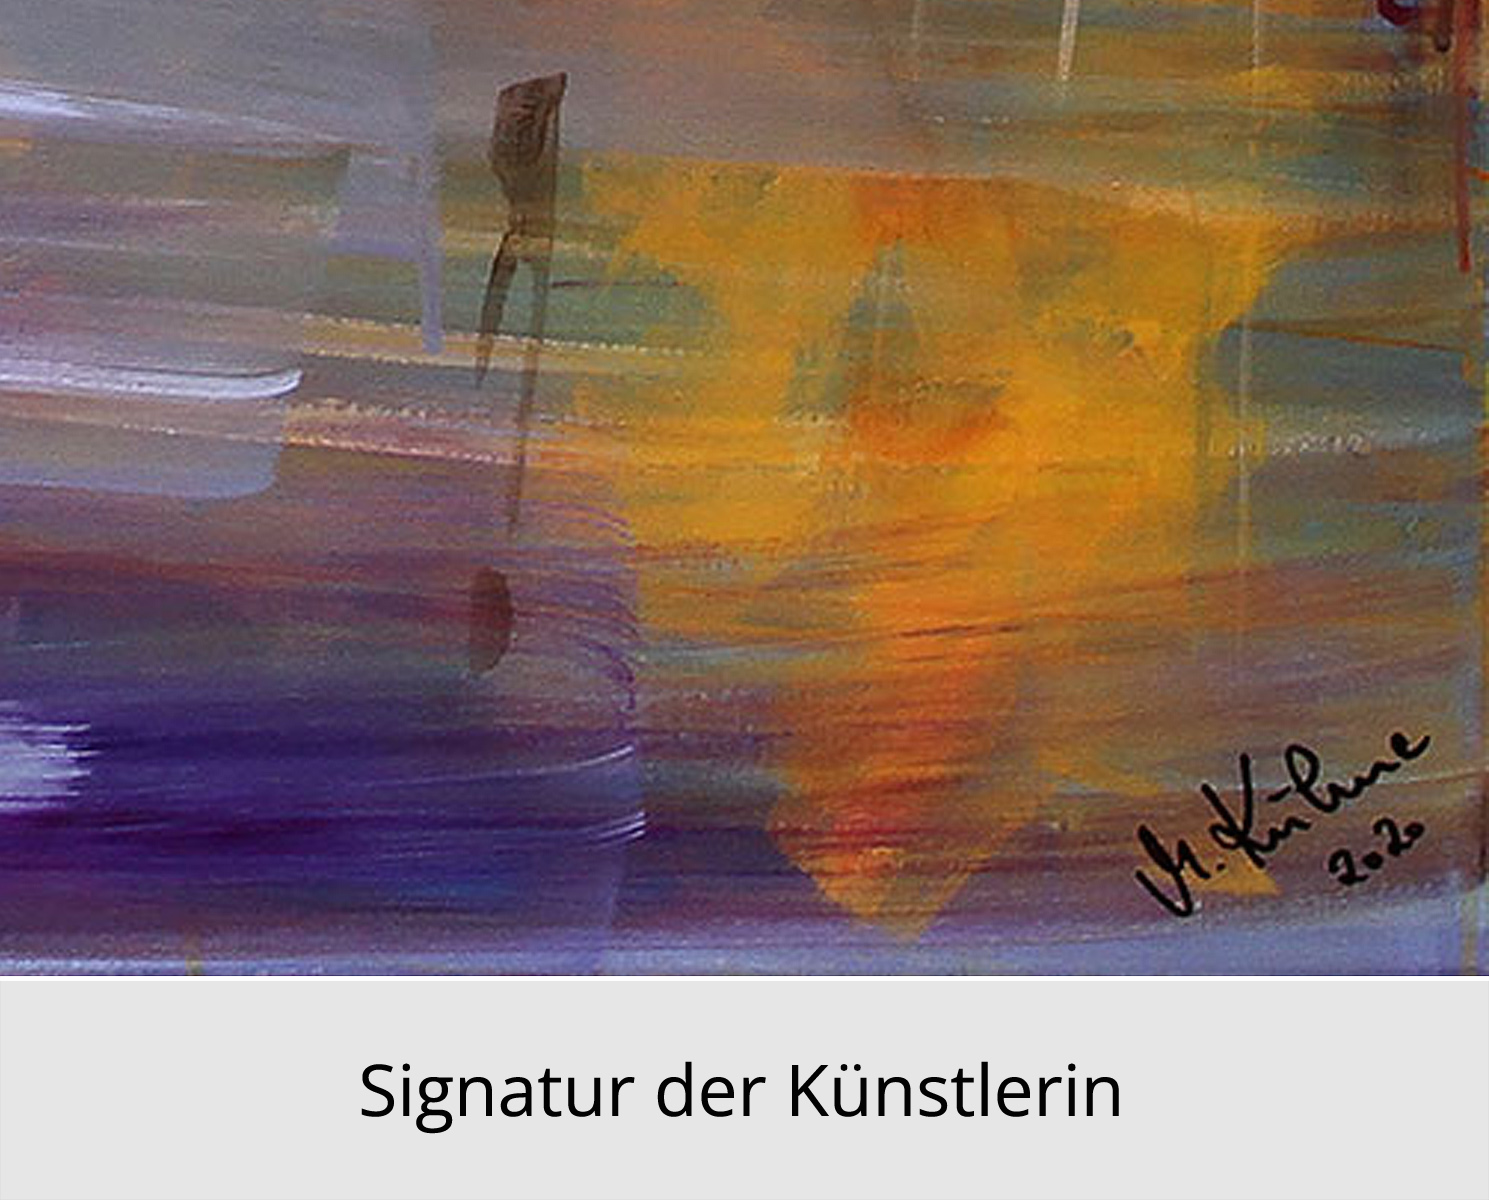 Limitierte Edition auf Papier, M. Kühne: "Farbspektakel", signierter Fineartprint, Nr. 4/150